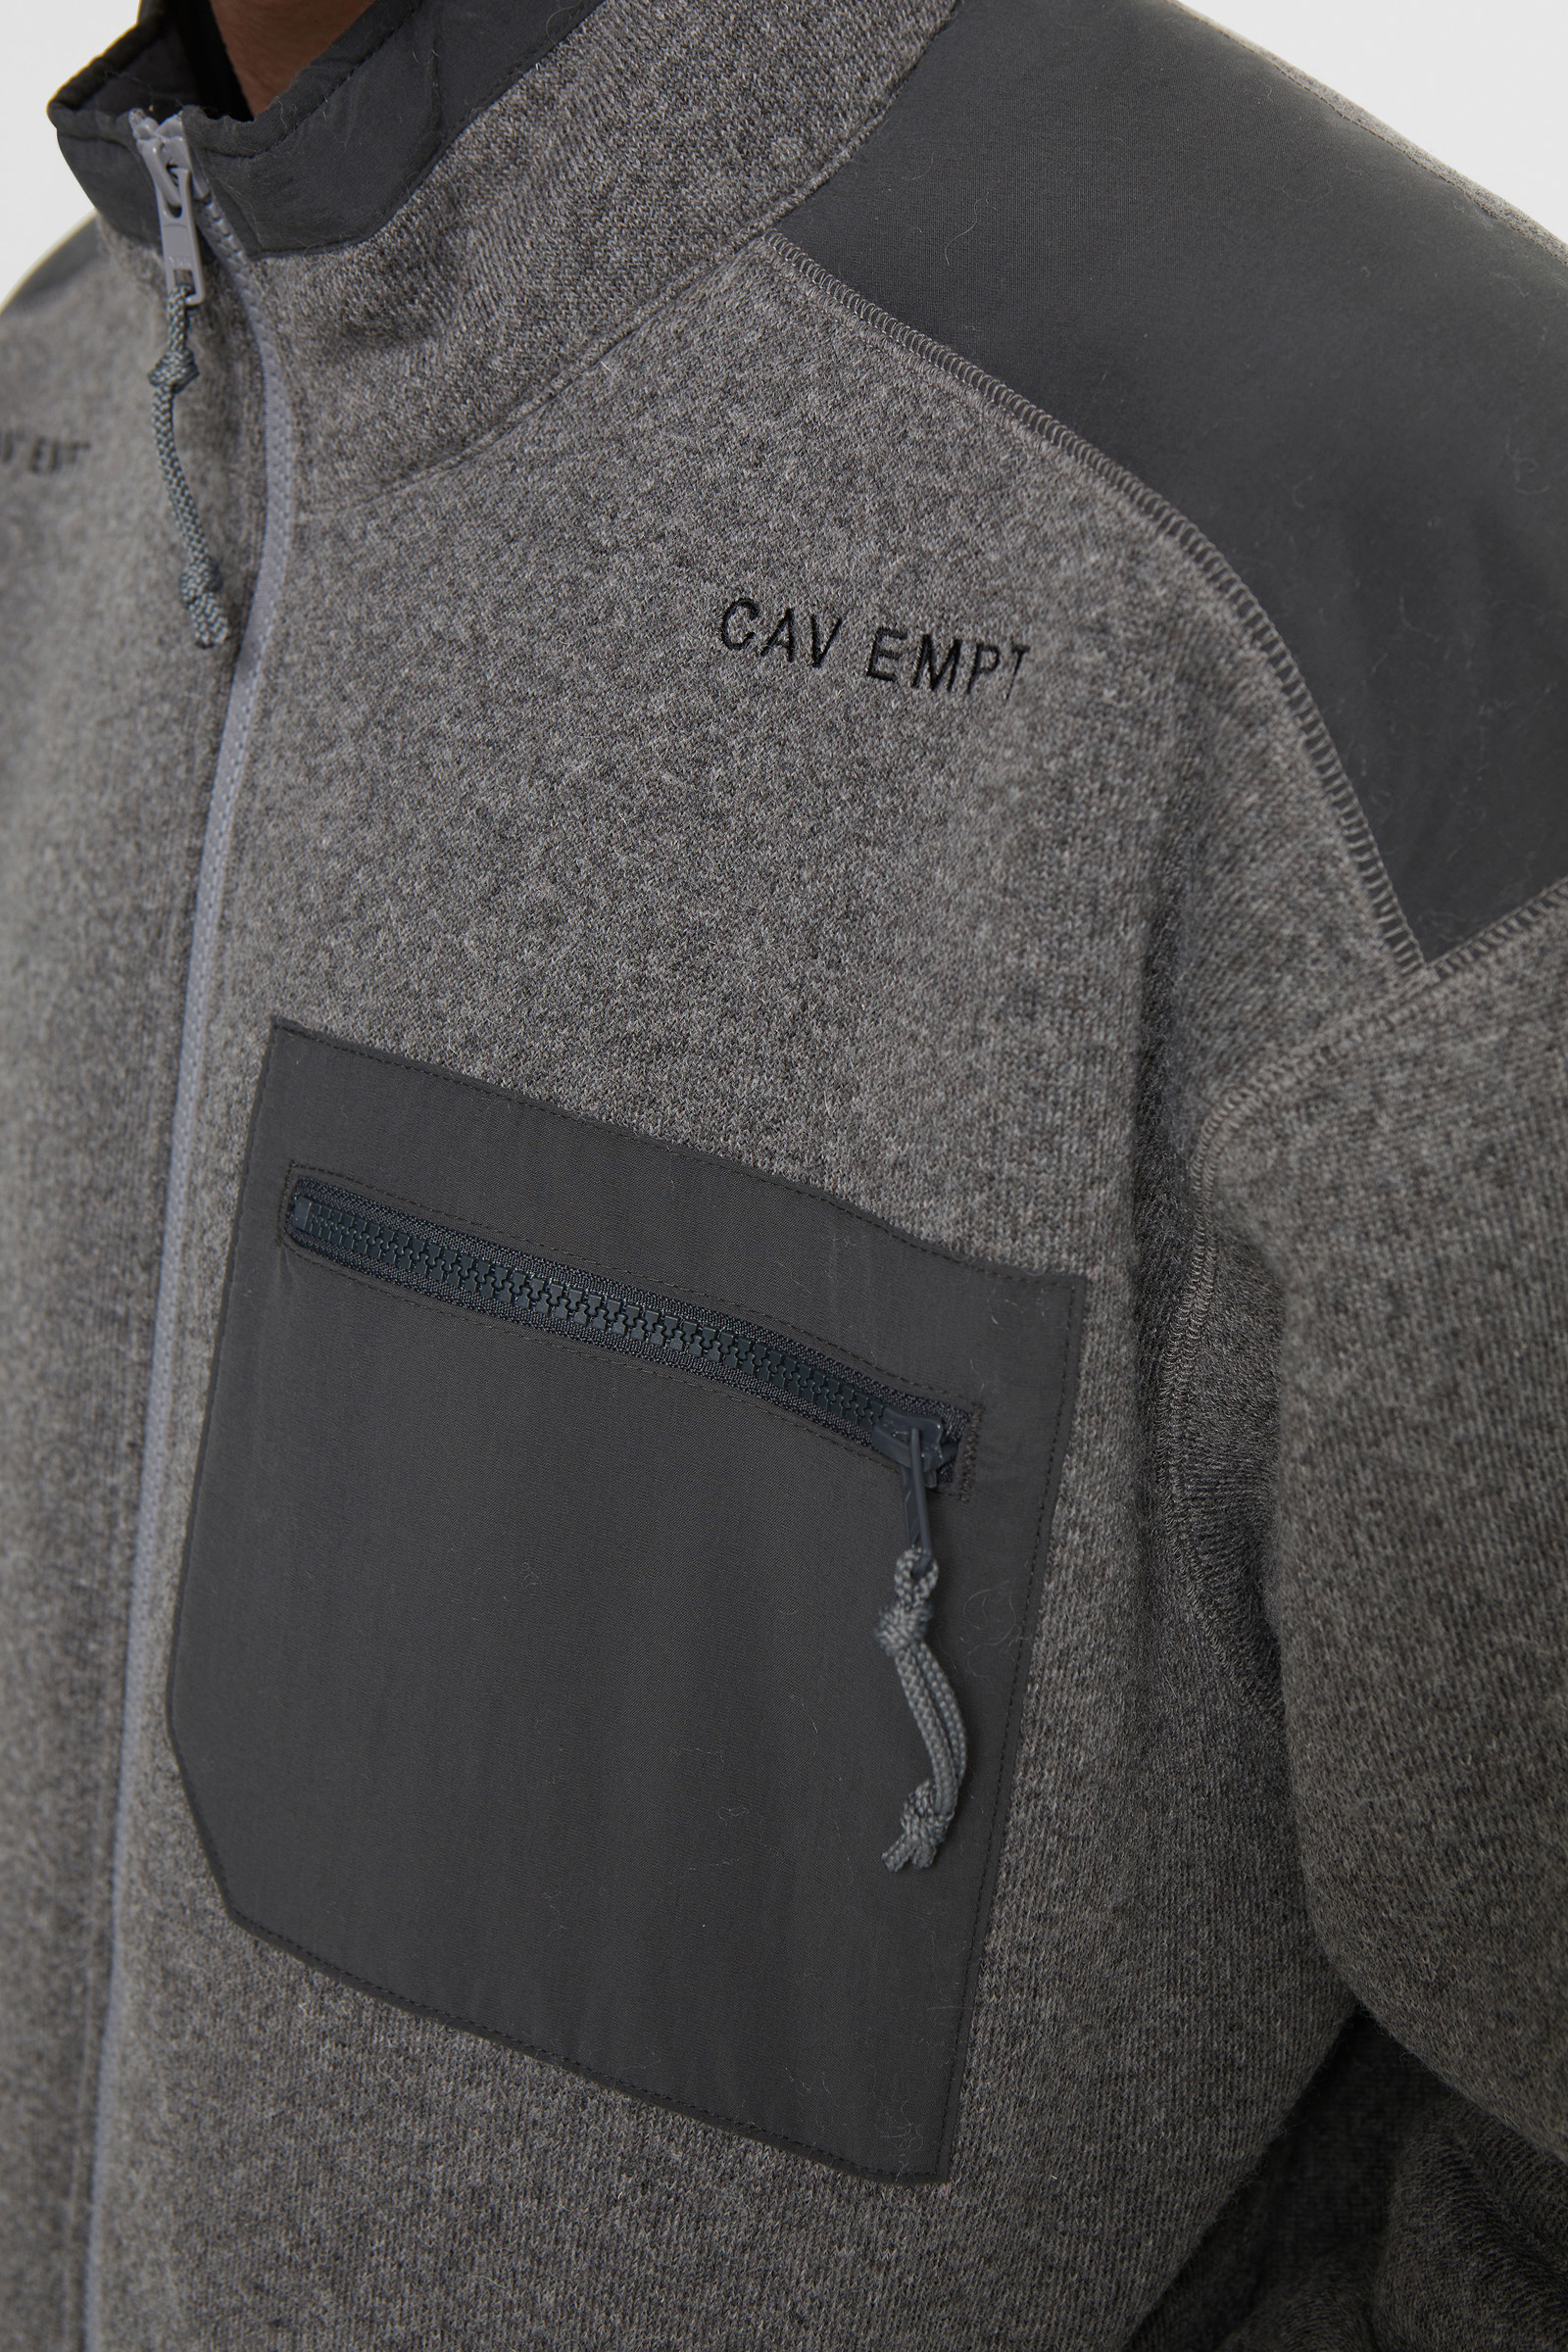 Cav Empt Furry Back Fleece Zip Up Grey | WoodWood.com